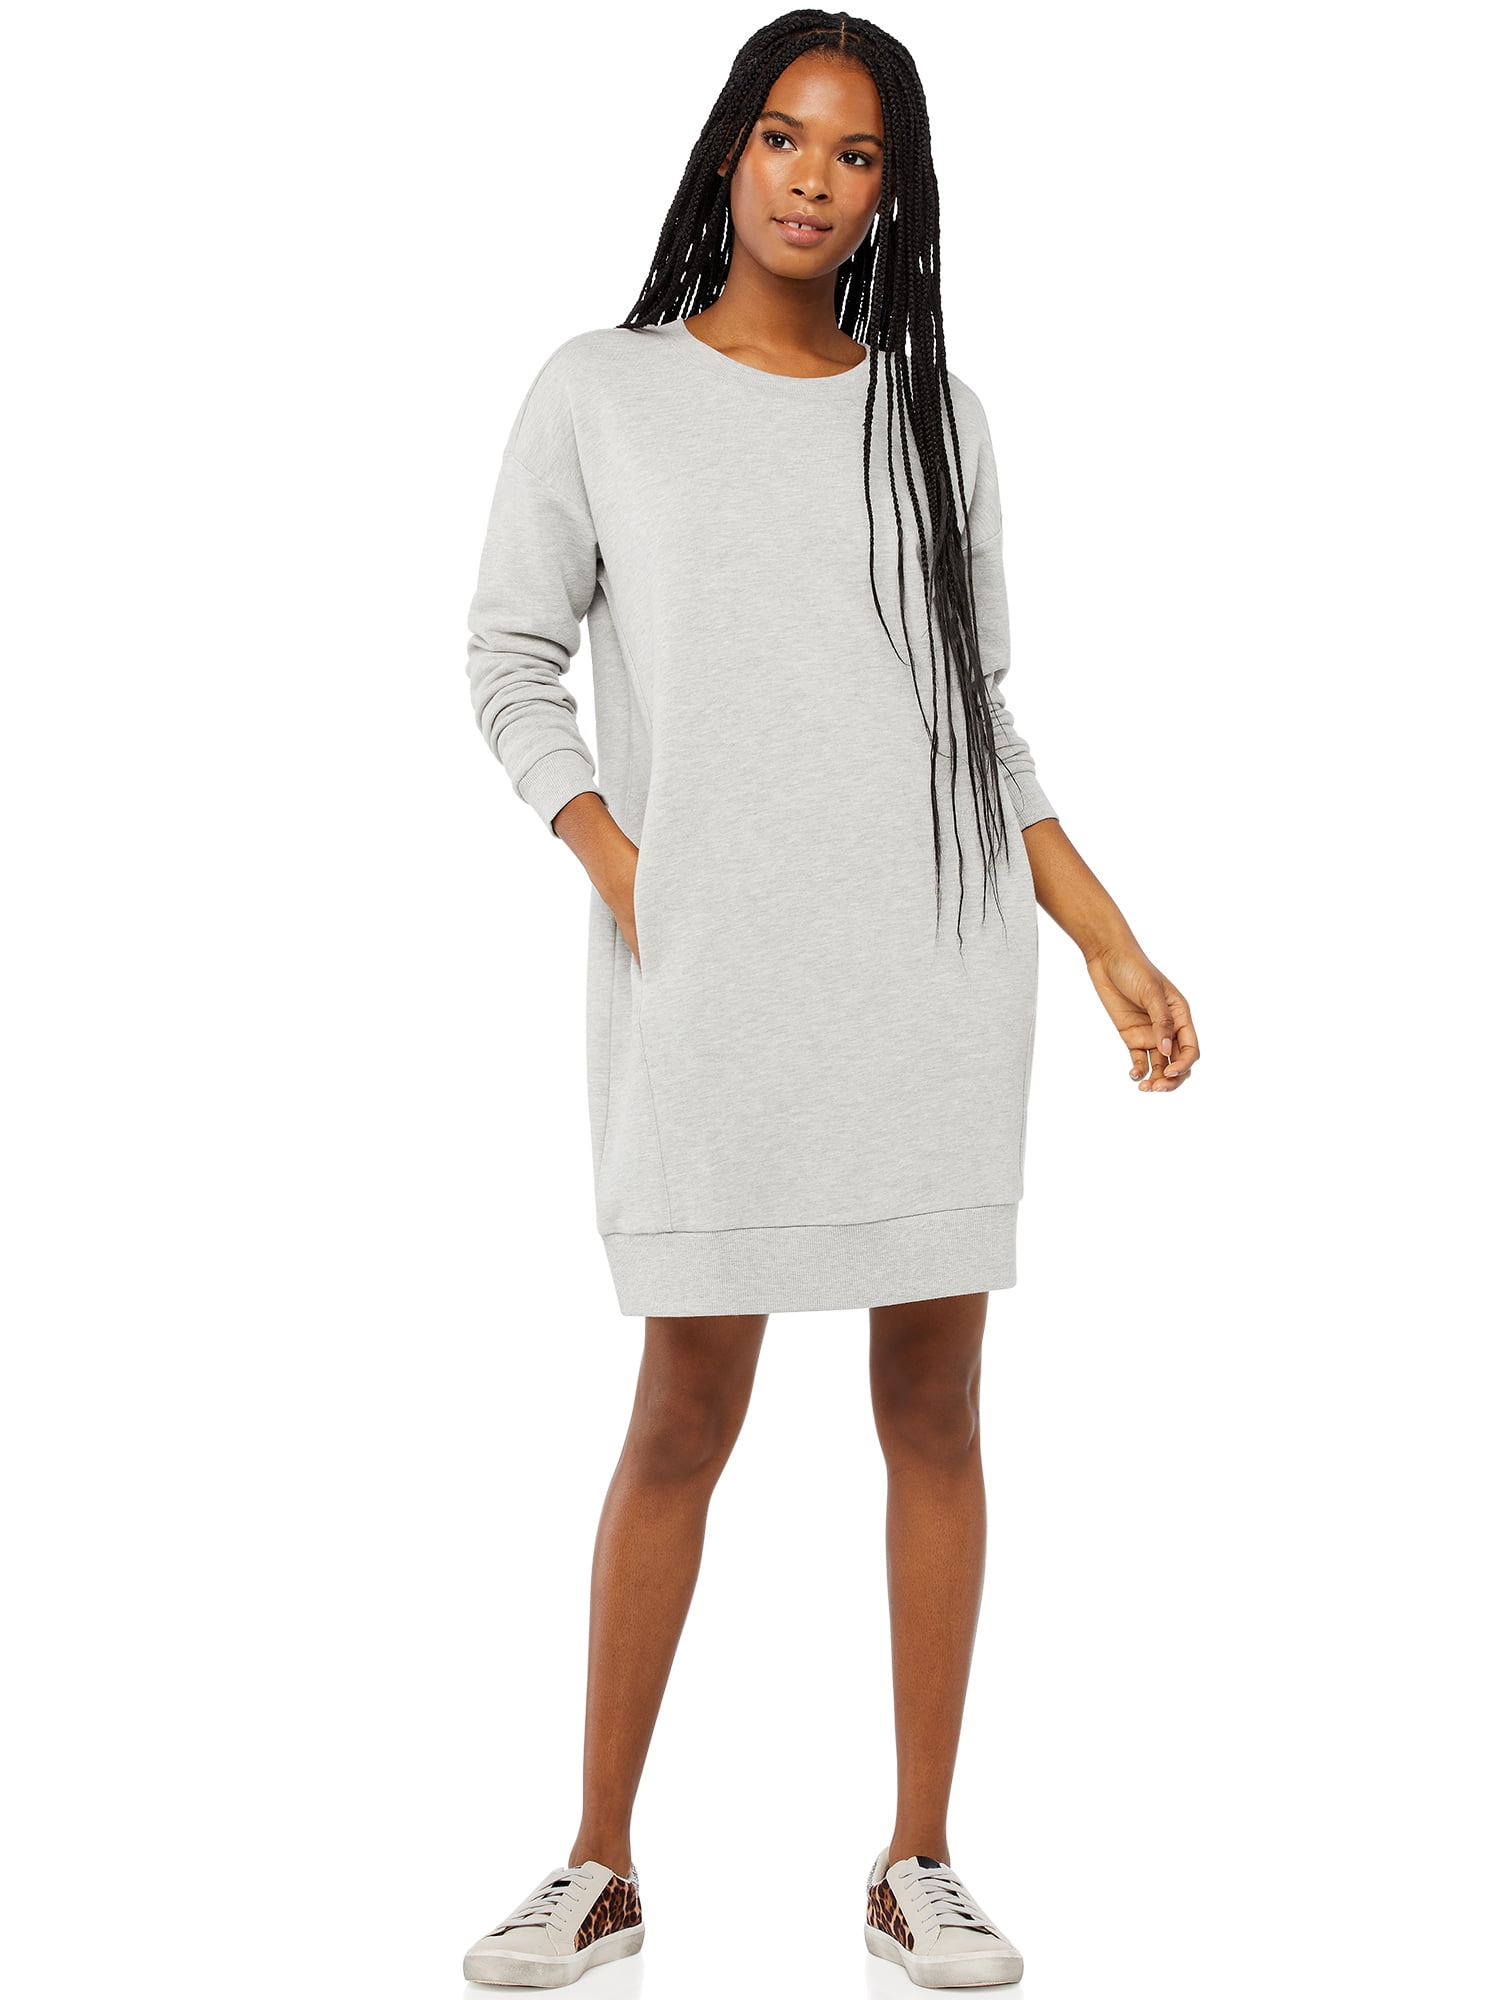 Scoop Women's Sweatshirt Dress - Walmart.com